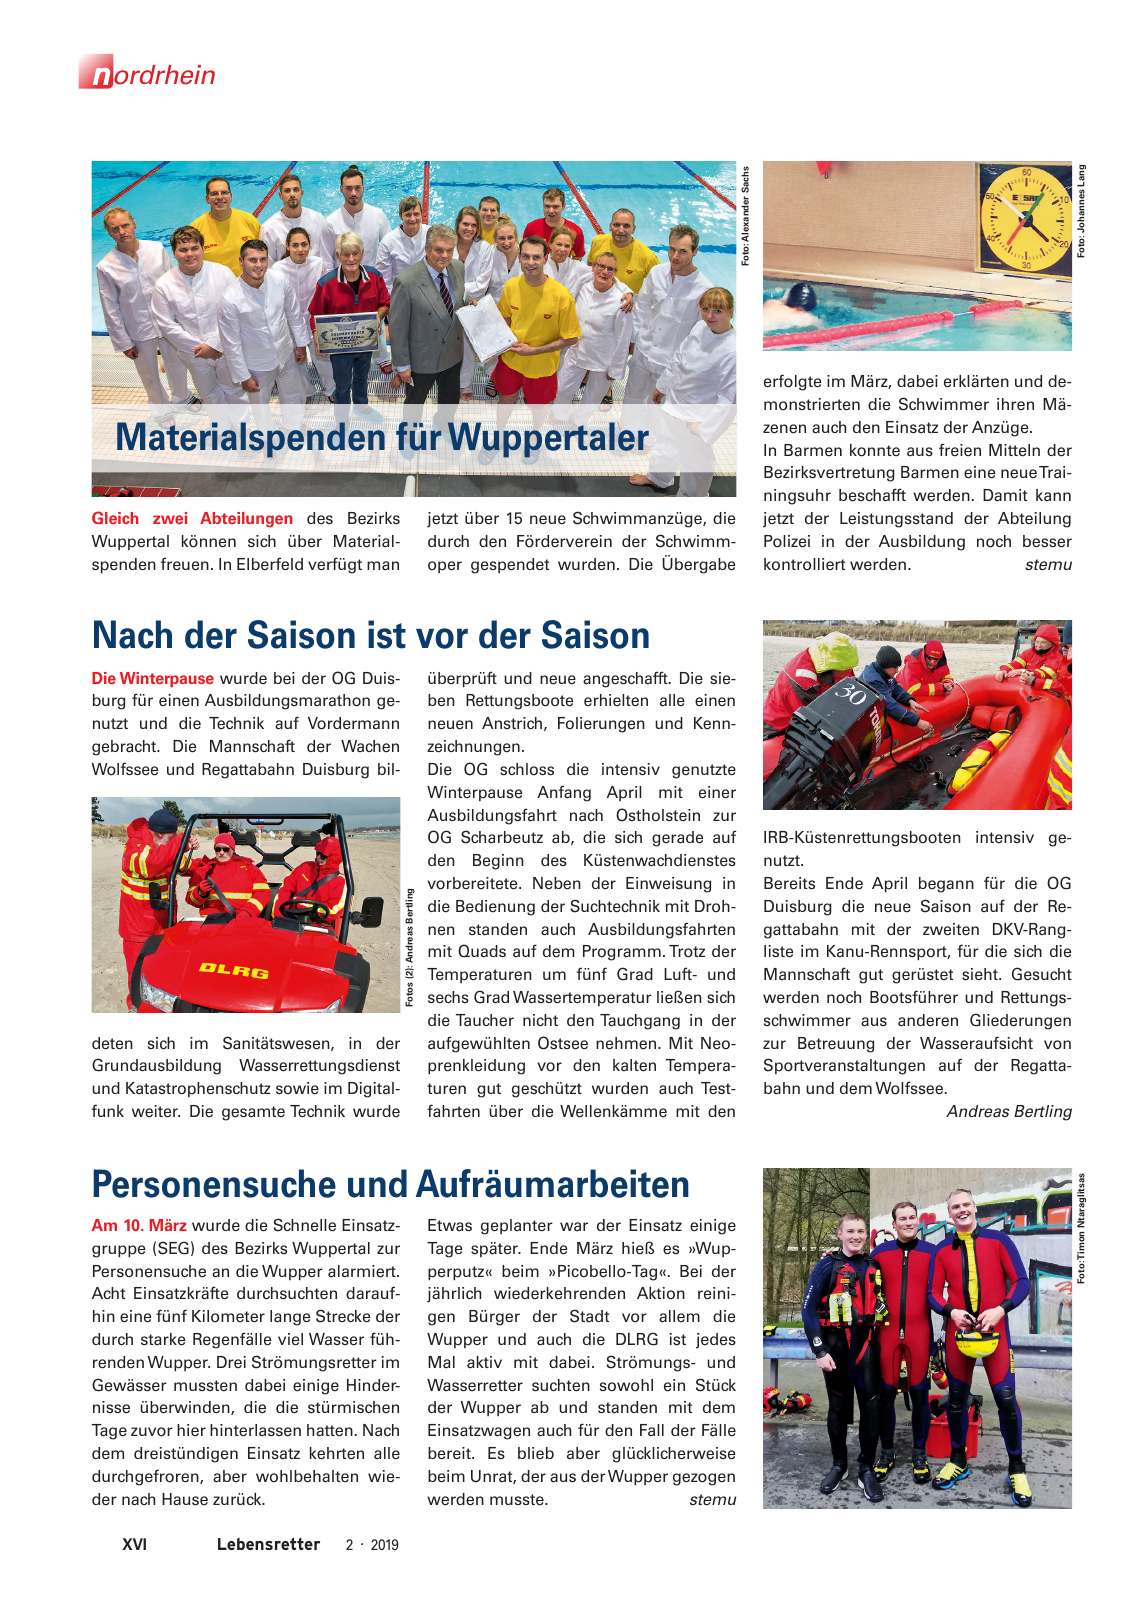 Vorschau Lebensretter 2/2019 - Nordrhein Regionalausgabe Seite 18